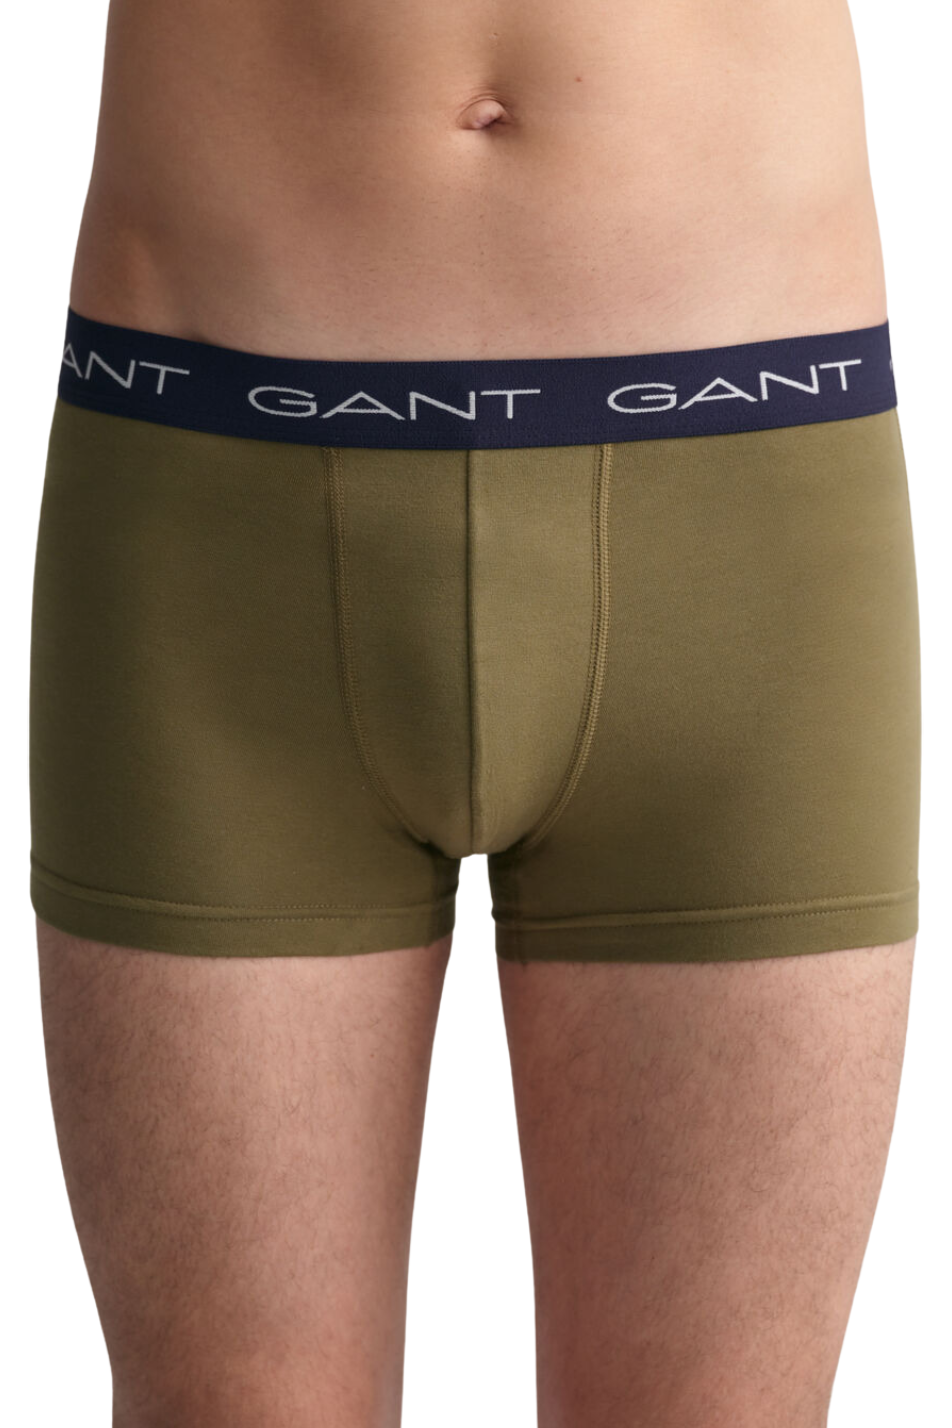 Gant 3 Pack Men's Print Trunk